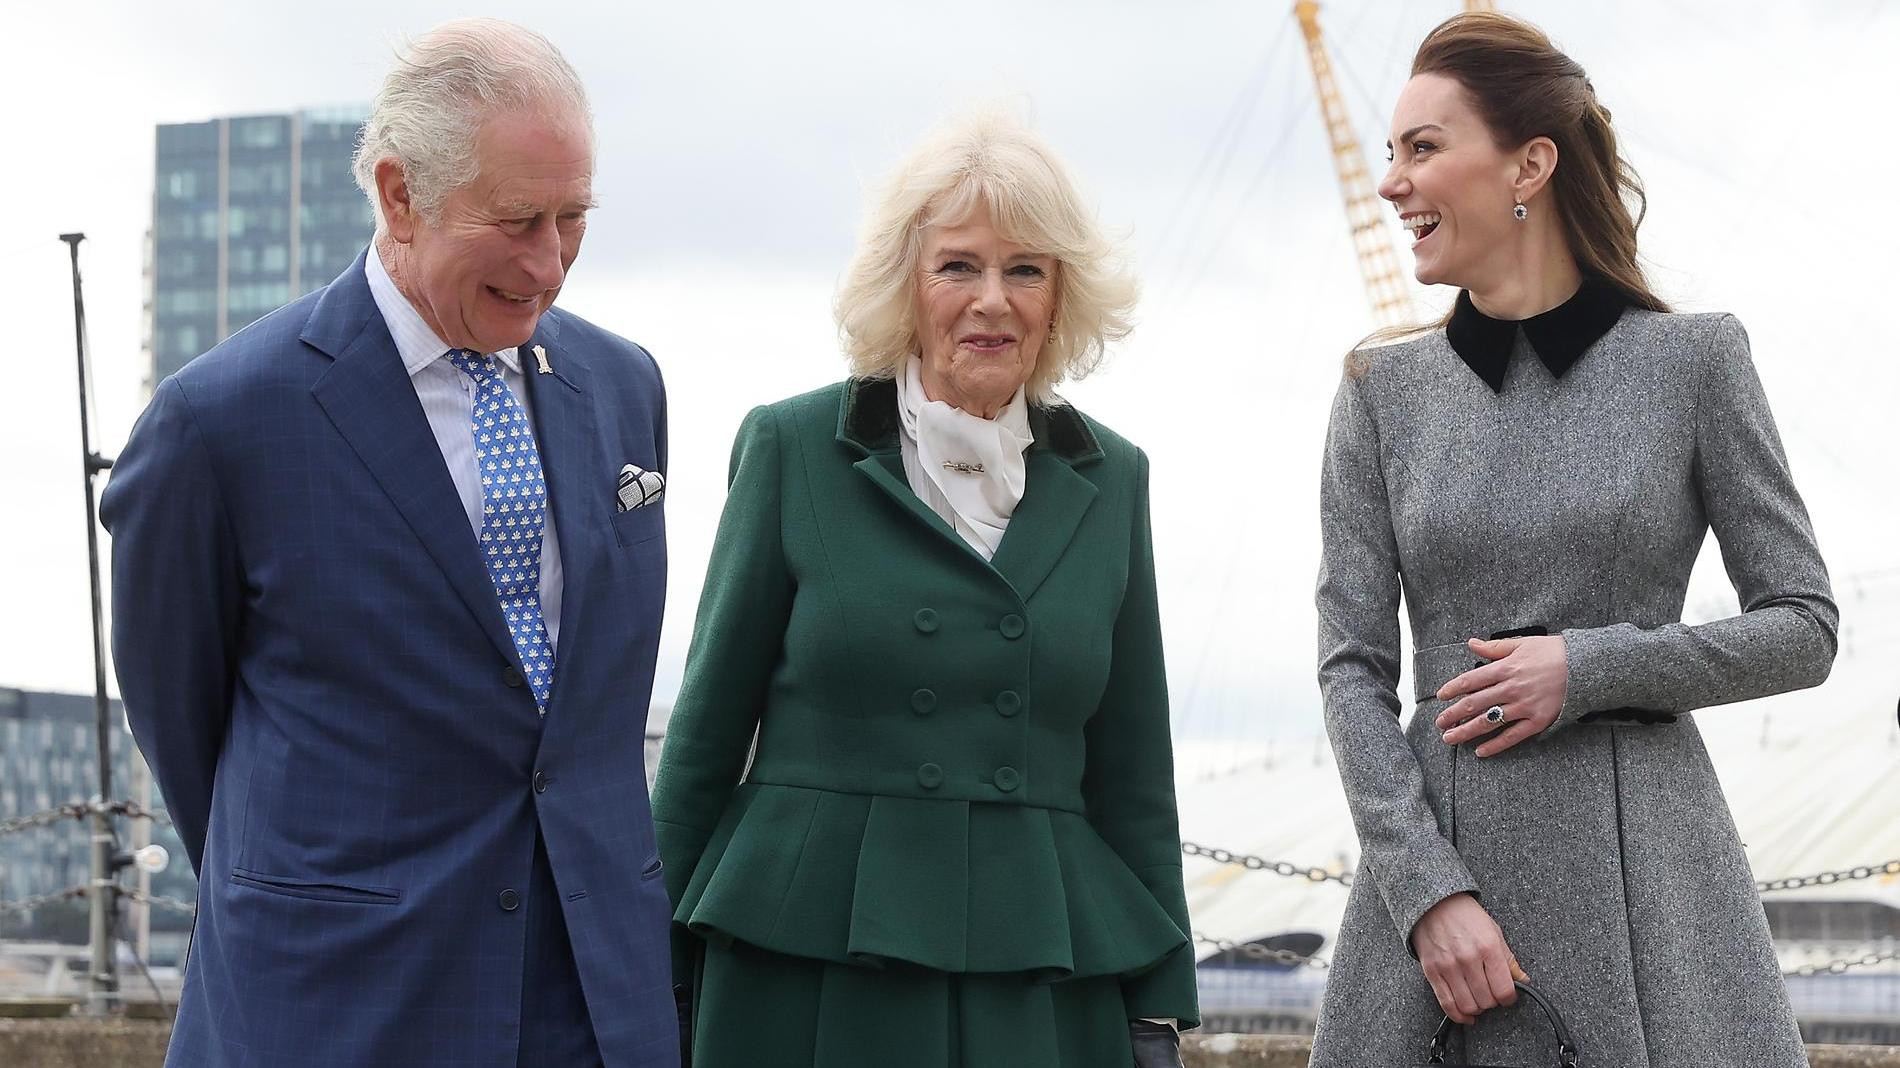 Карл III, королева Камилла и Кейт Миддлтон. Фото: Getty Images